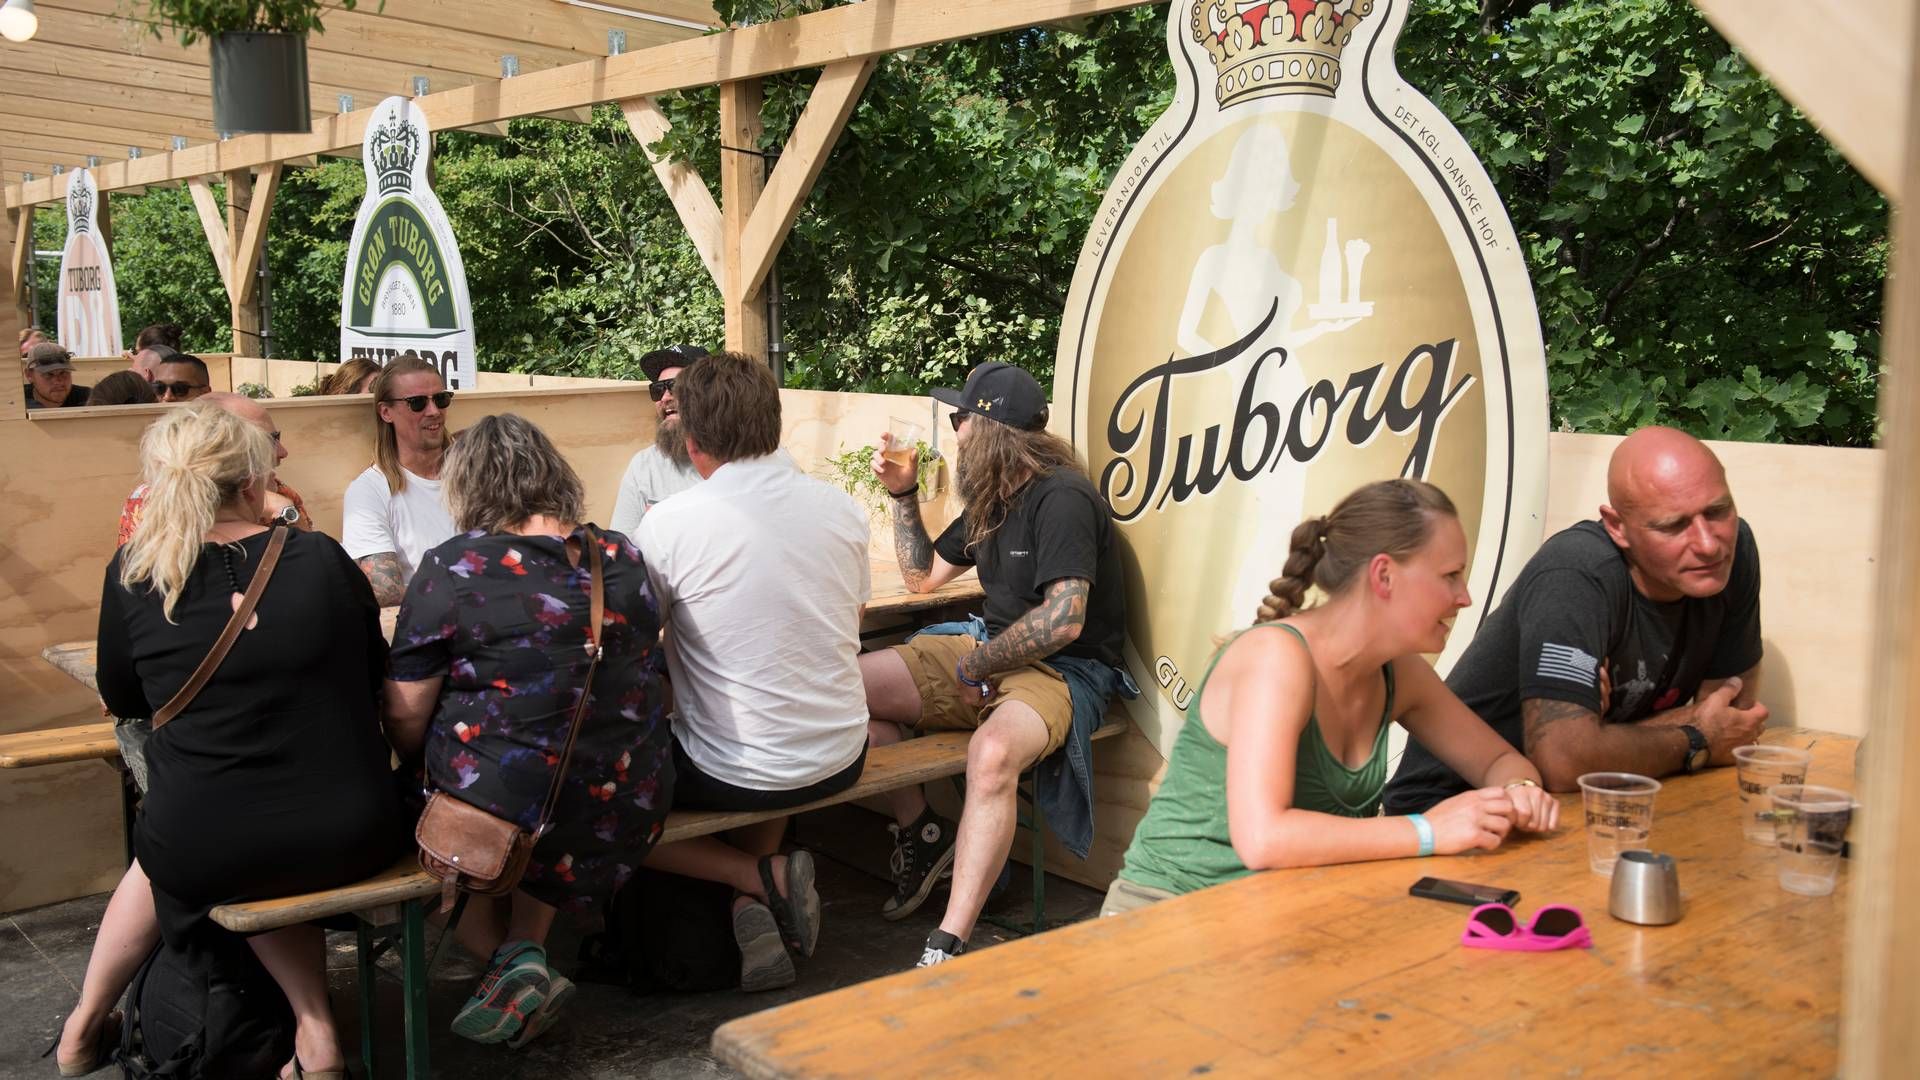 Mens udgifterne til alkoholfri øl og øl med lavt alkoholindhold steg fra 2011 til 2021, steg prisen mindre end priserne for andet øl. | Foto: Laura Bisgaard Krogh